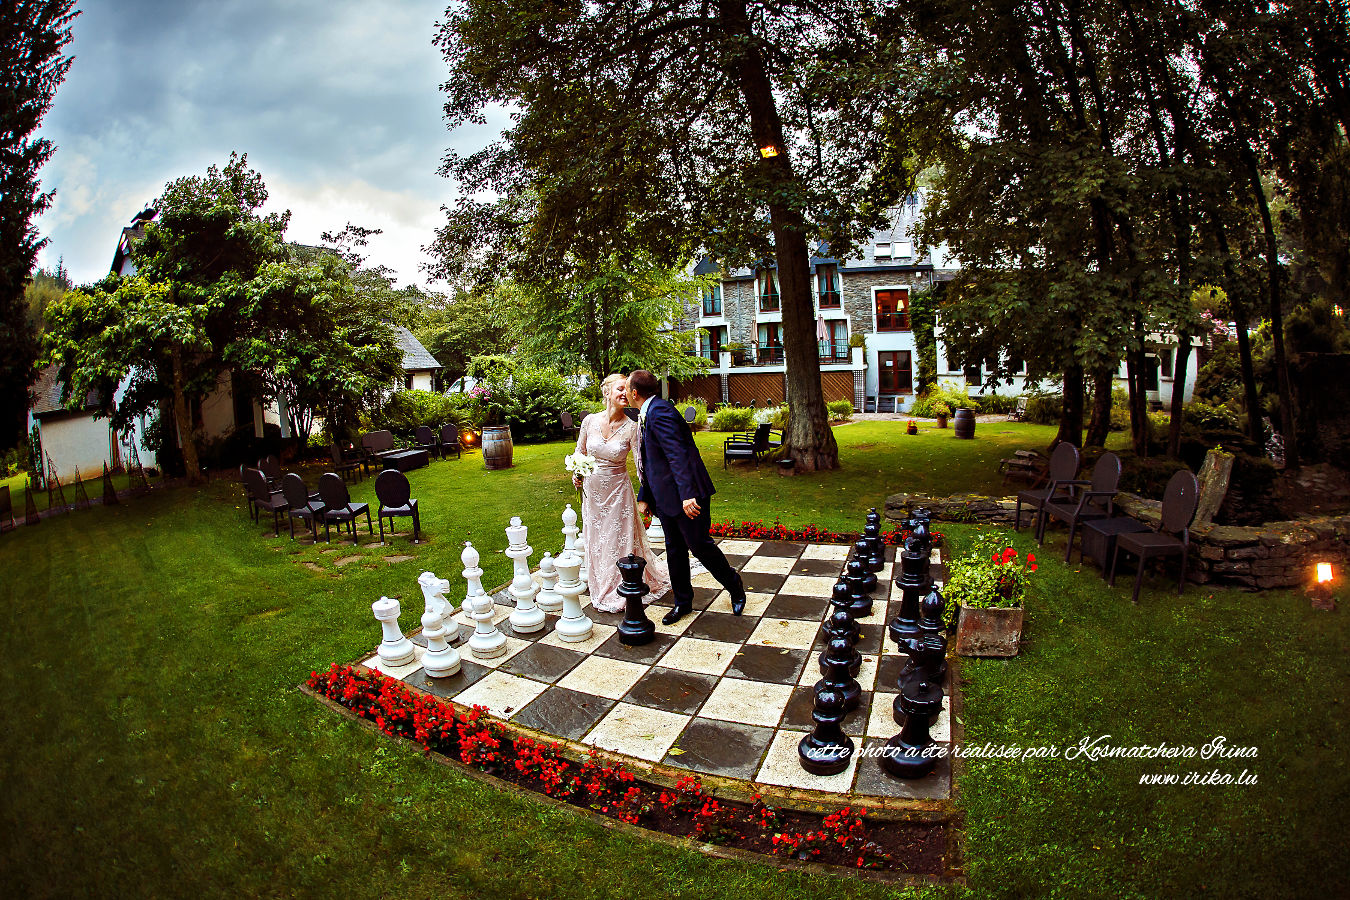 Jouer aux échecs le jour du mariage